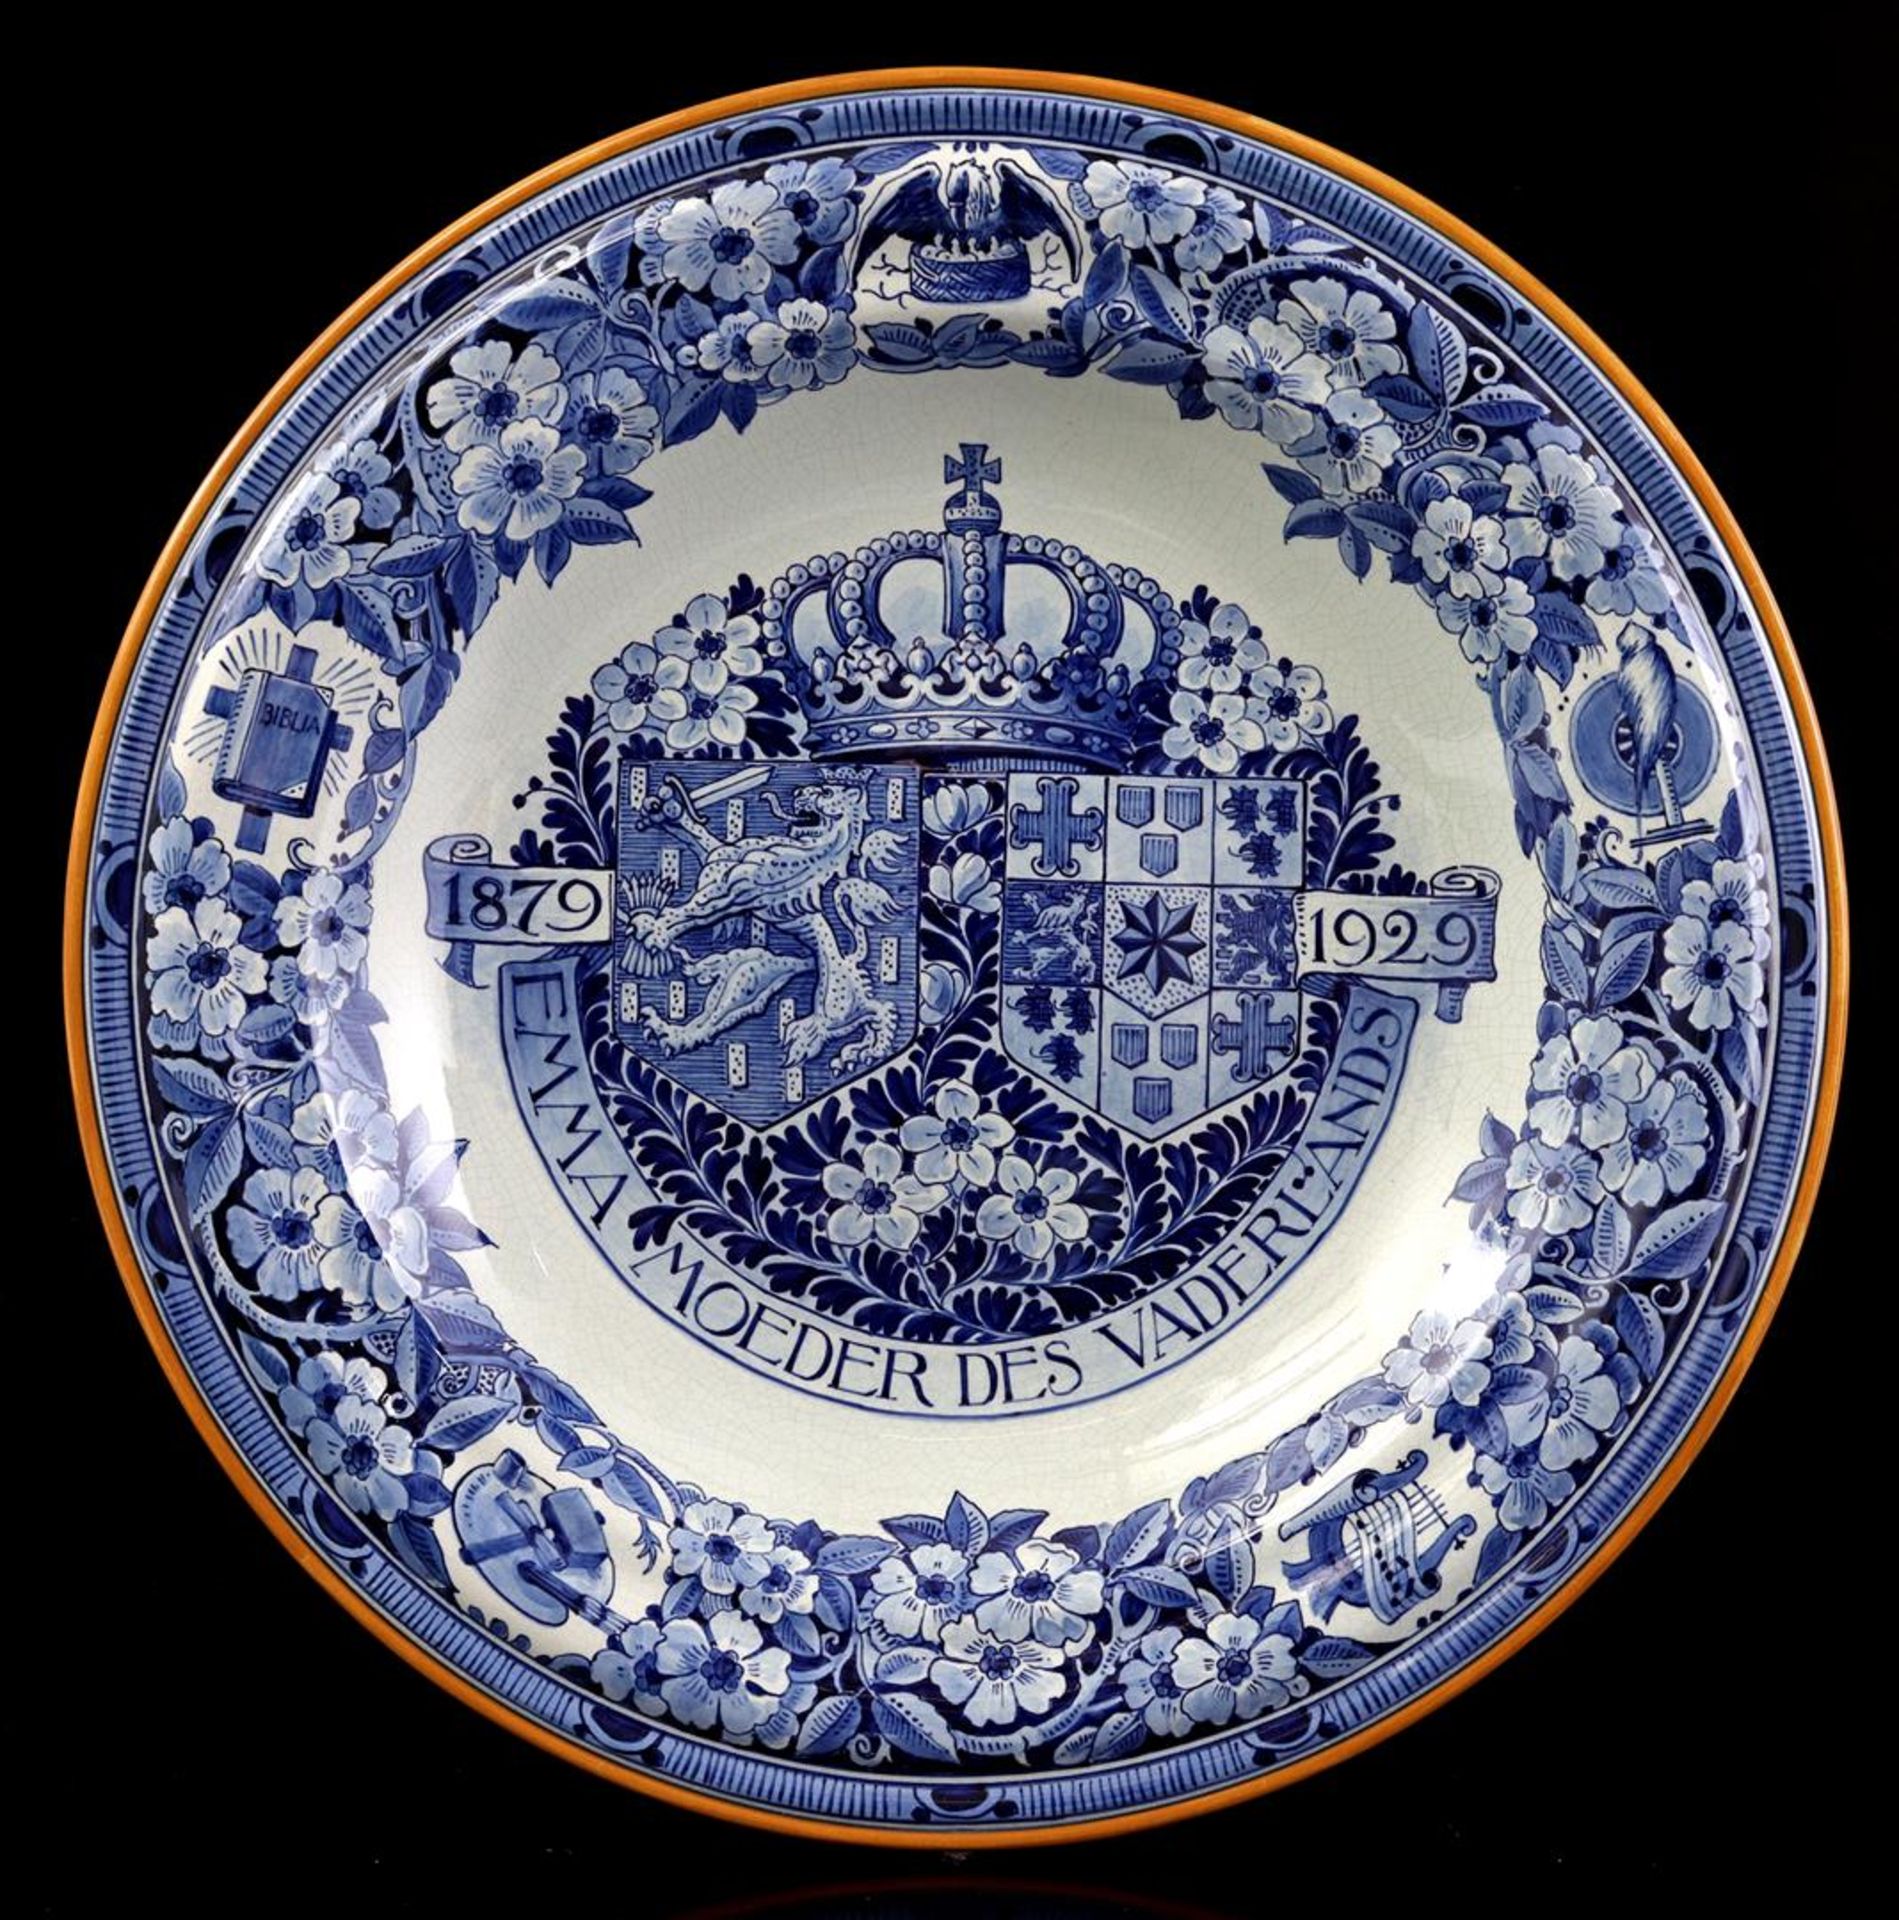 3 Porceleyne Fles Delft earthenware occasion dishes - Bild 4 aus 4